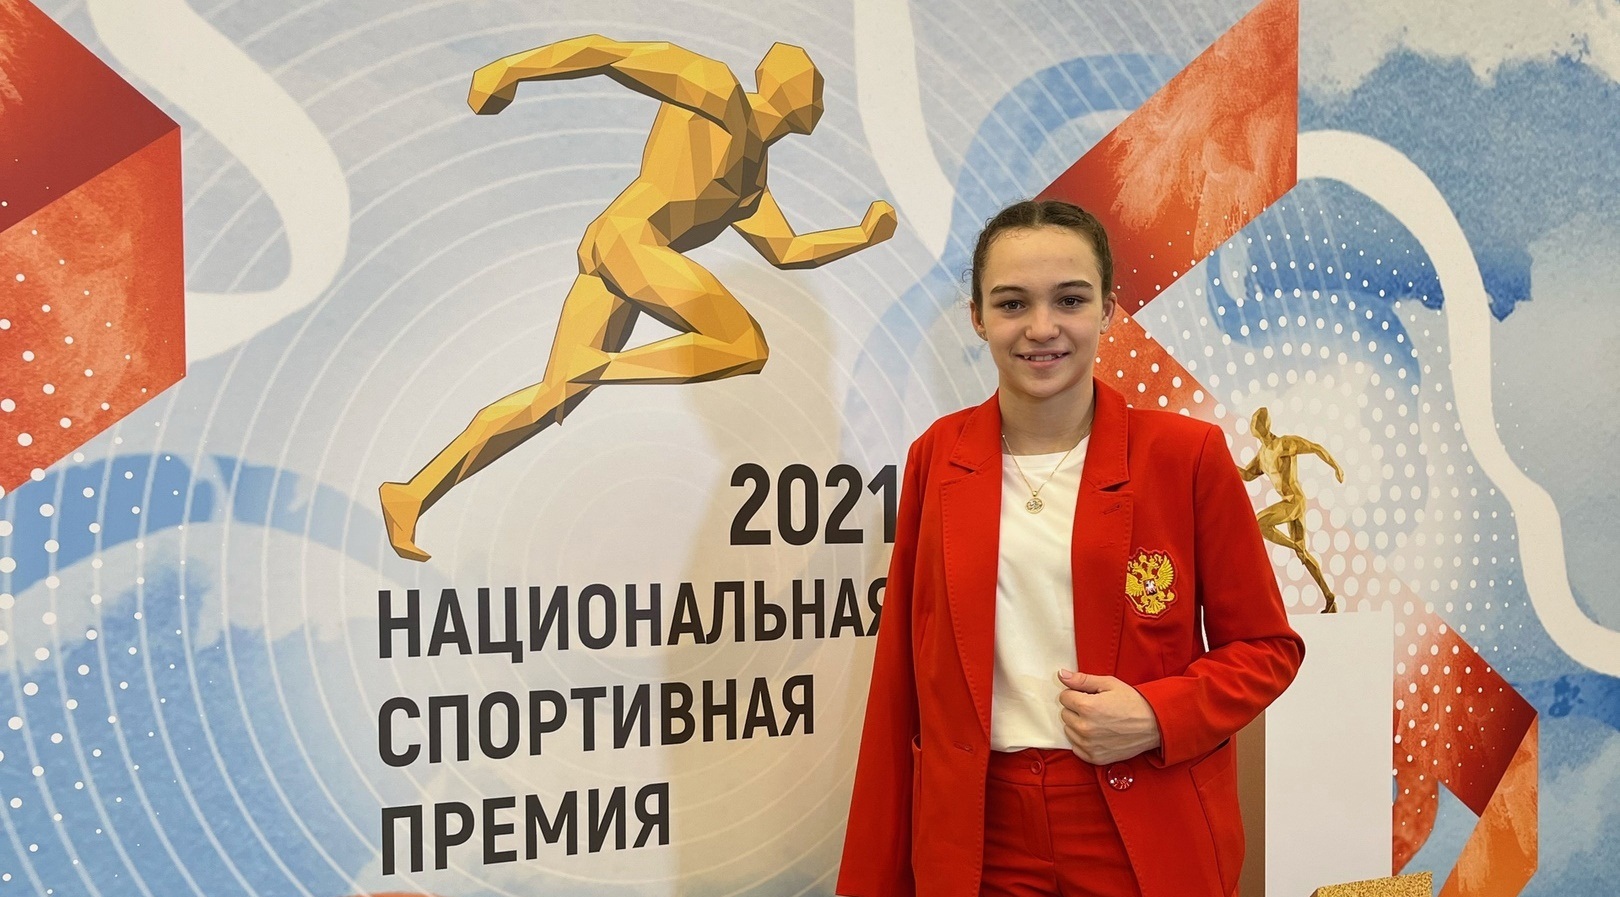 Паралимпийская чемпионка из Орска Виктория Ищиулова стала финалистом Национальной спортивной премии